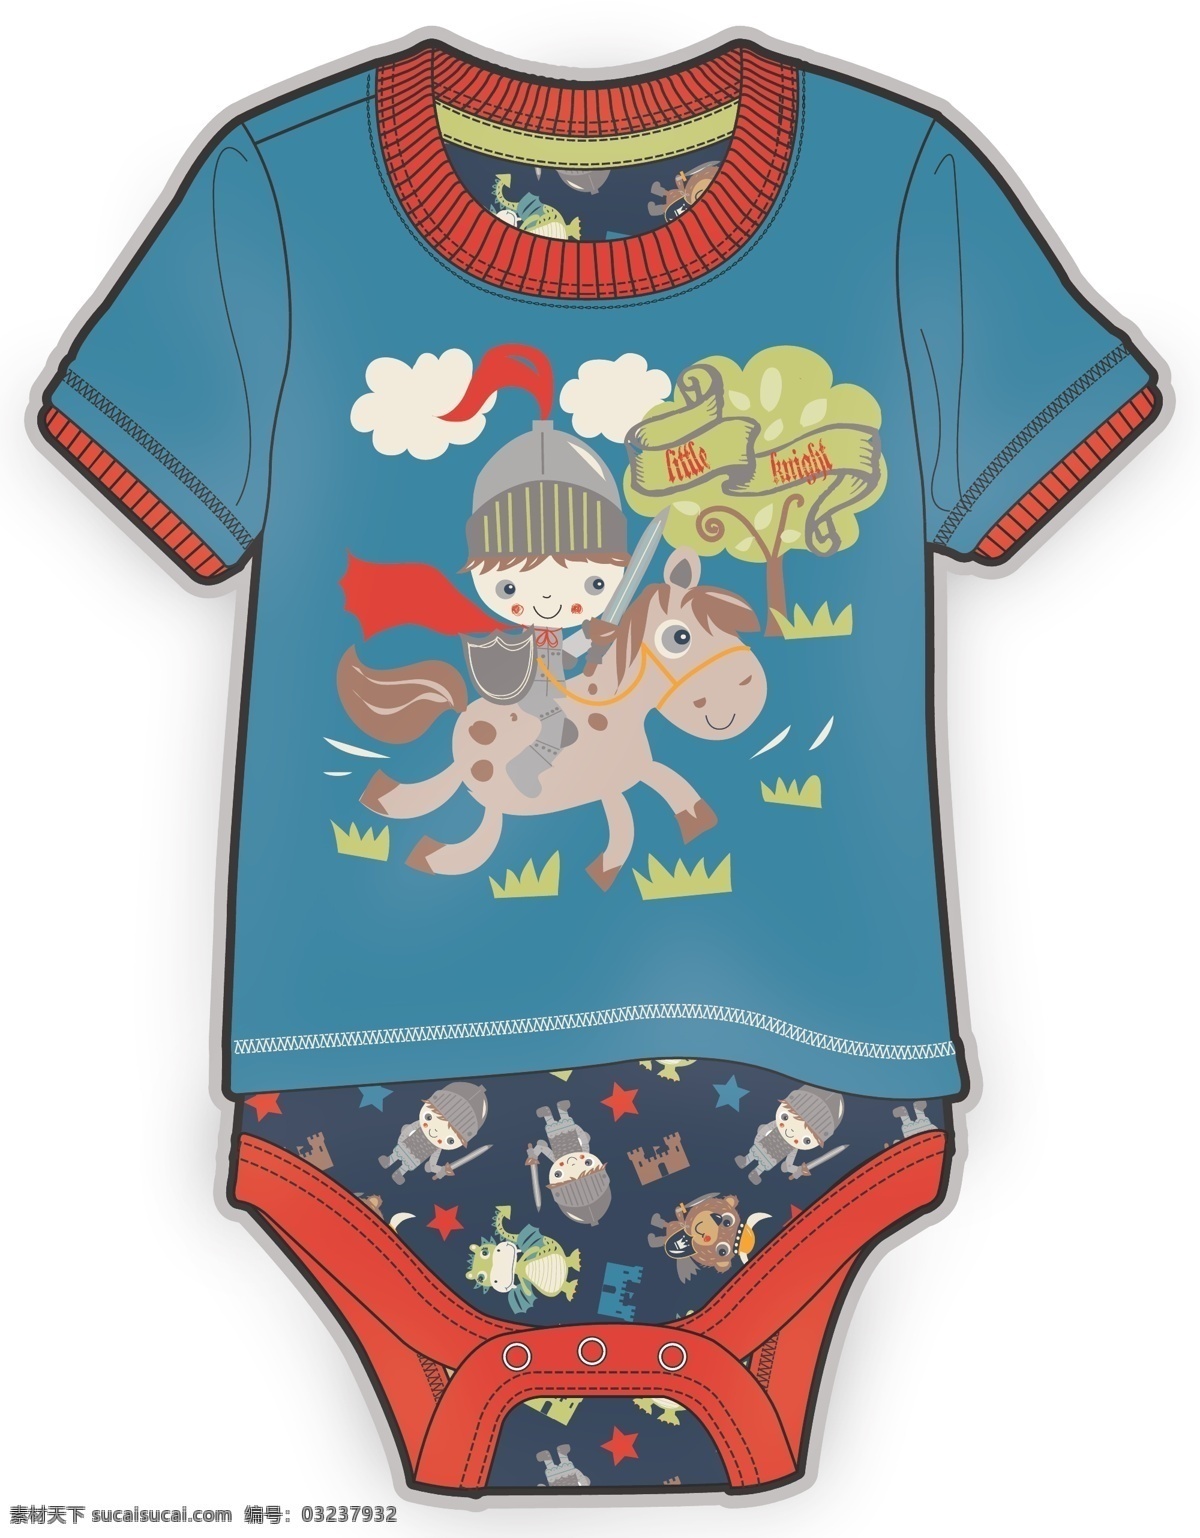 卡通 王子 连体衣 婴儿 服装 彩色 矢量 蓝色 短袖 婴儿服装设计 可爱 手绘 保暖 线条 源文件